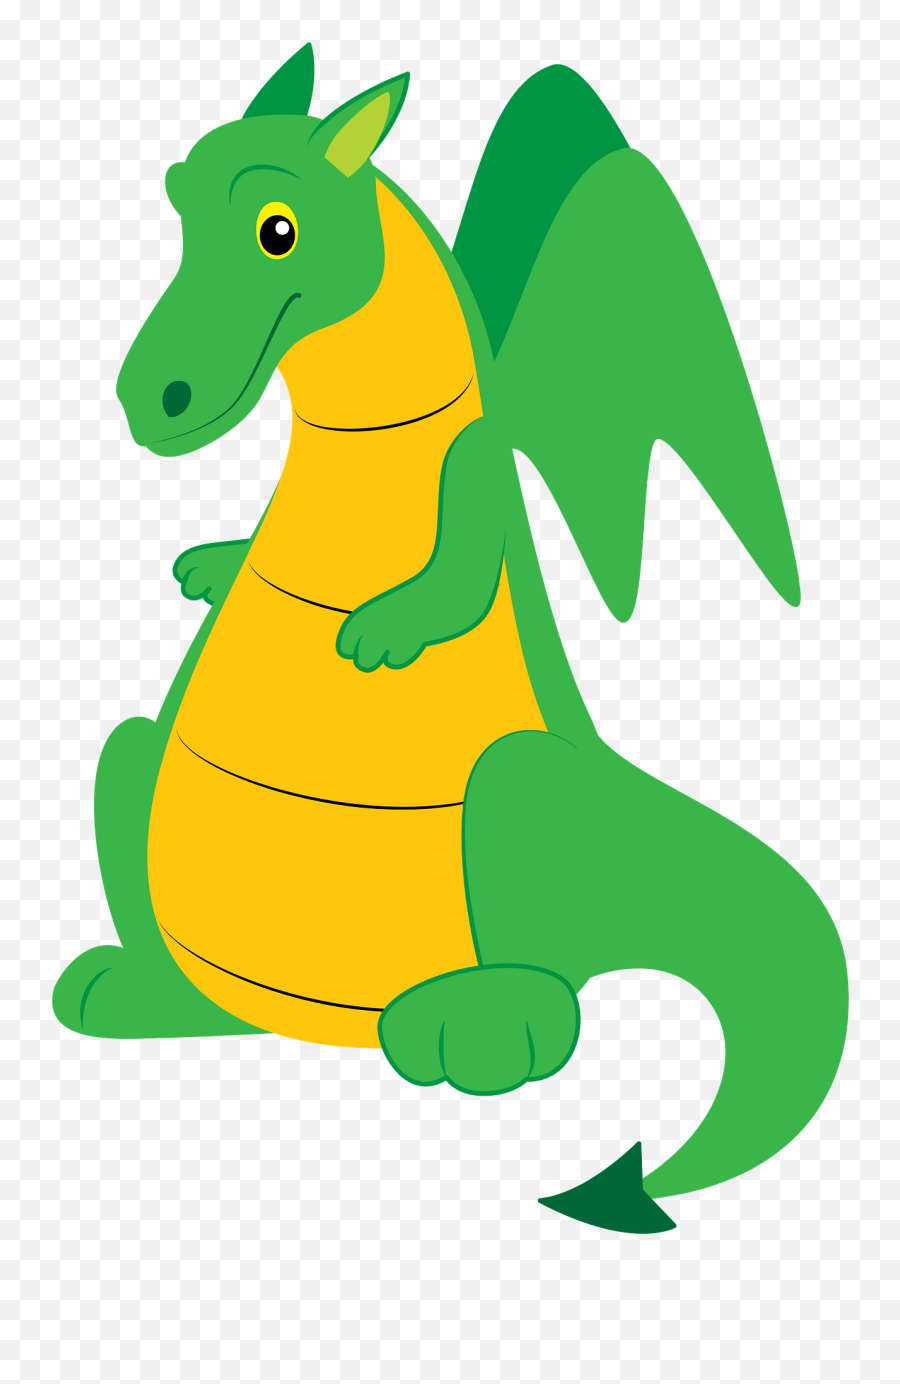 Dragon Clipart Free Download Transparent Png Creazilla - Transarent Dragon Clipart Emoji,Welsh Dragon Emoticon